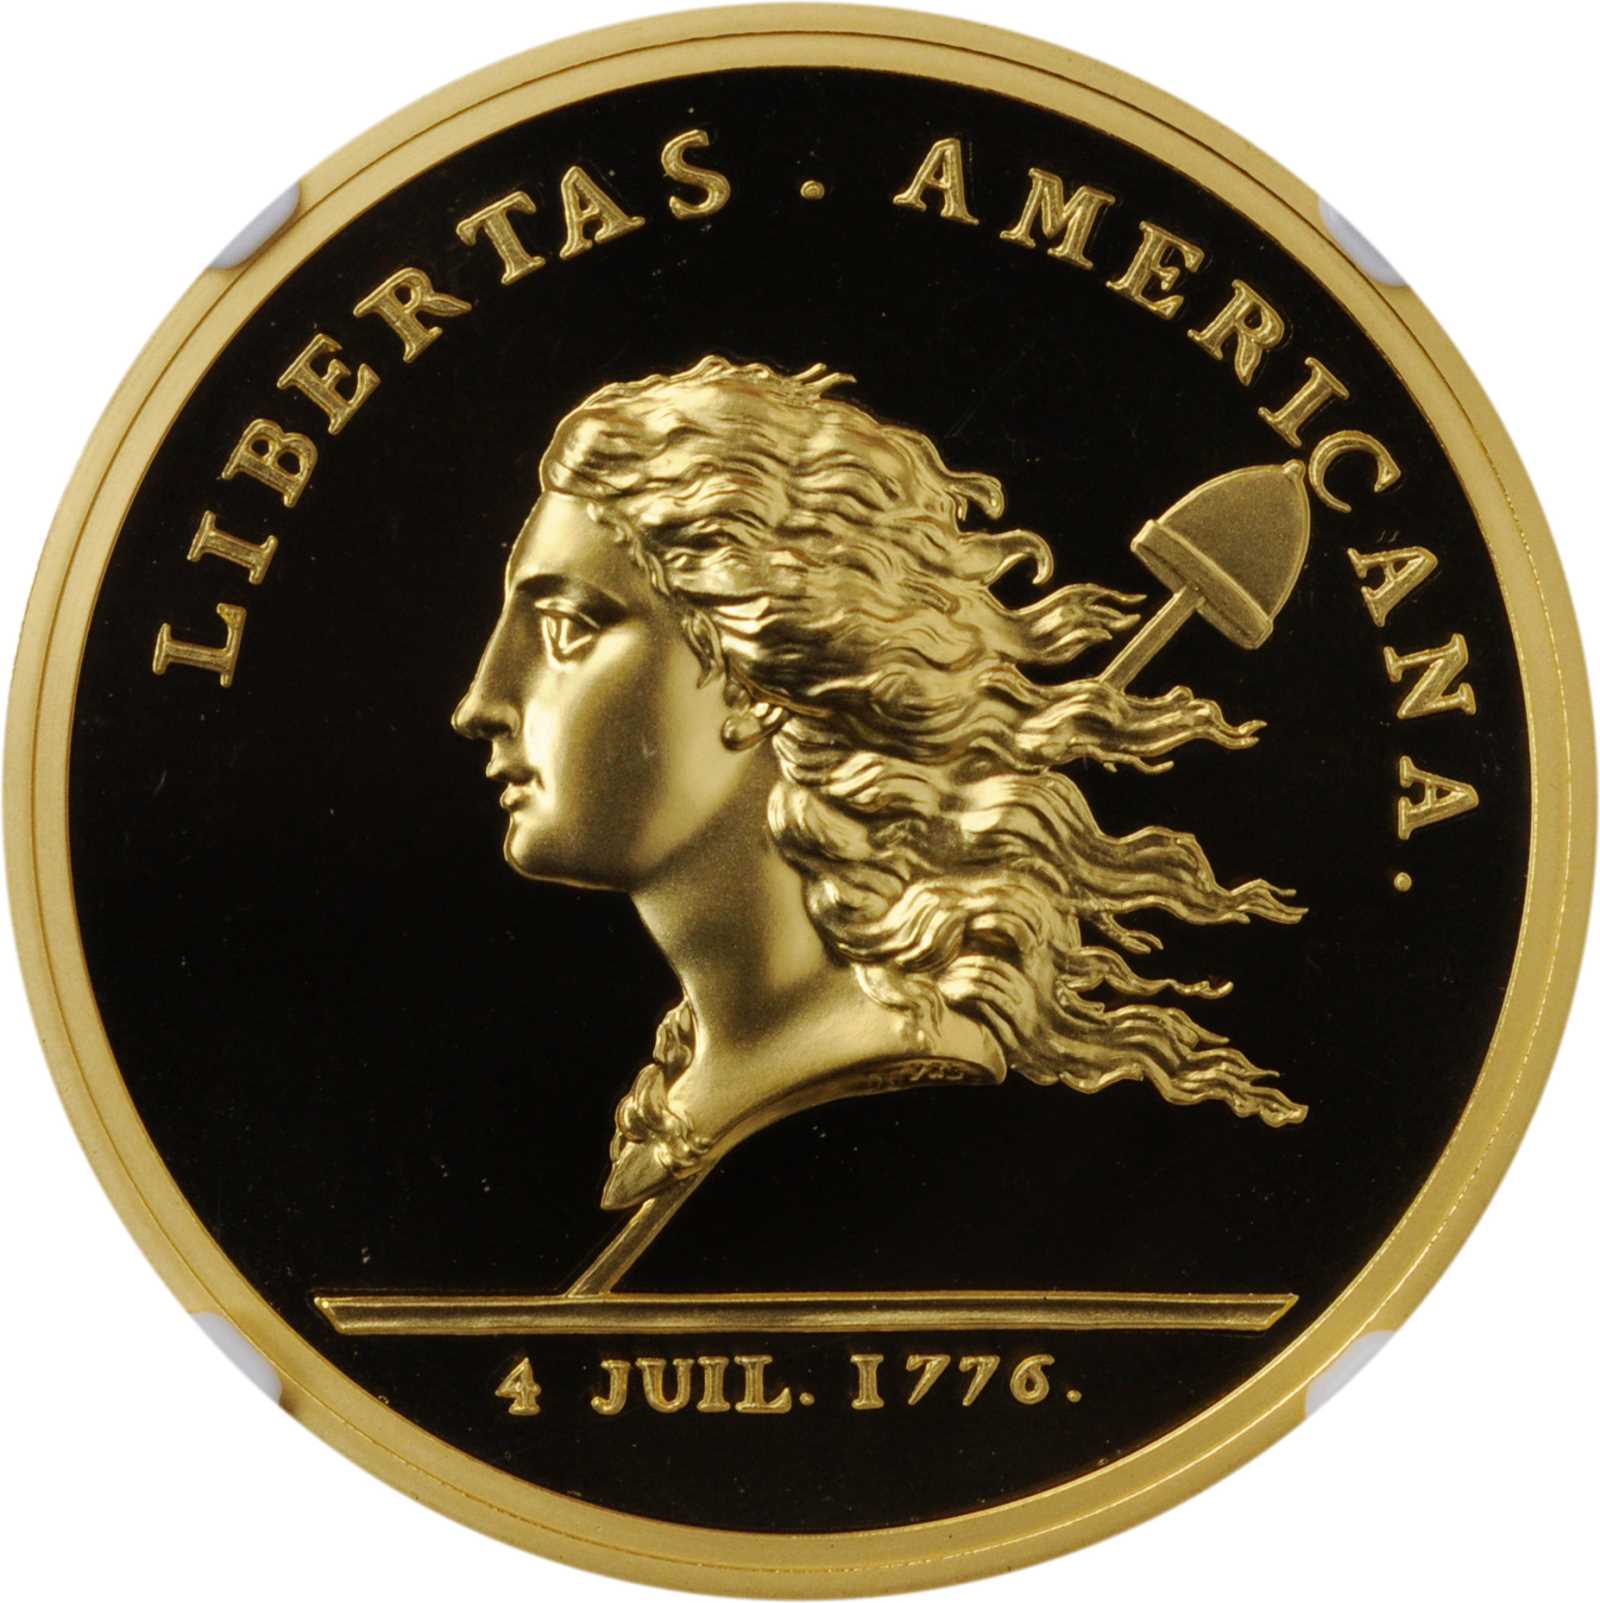 2014年 フランス リベルタス アメリカーナ 1オンス 金貨 NGC PF 70 ULTRA CAMEO 最高鑑定品 アメリカ独立記念金貨 - 貨幣